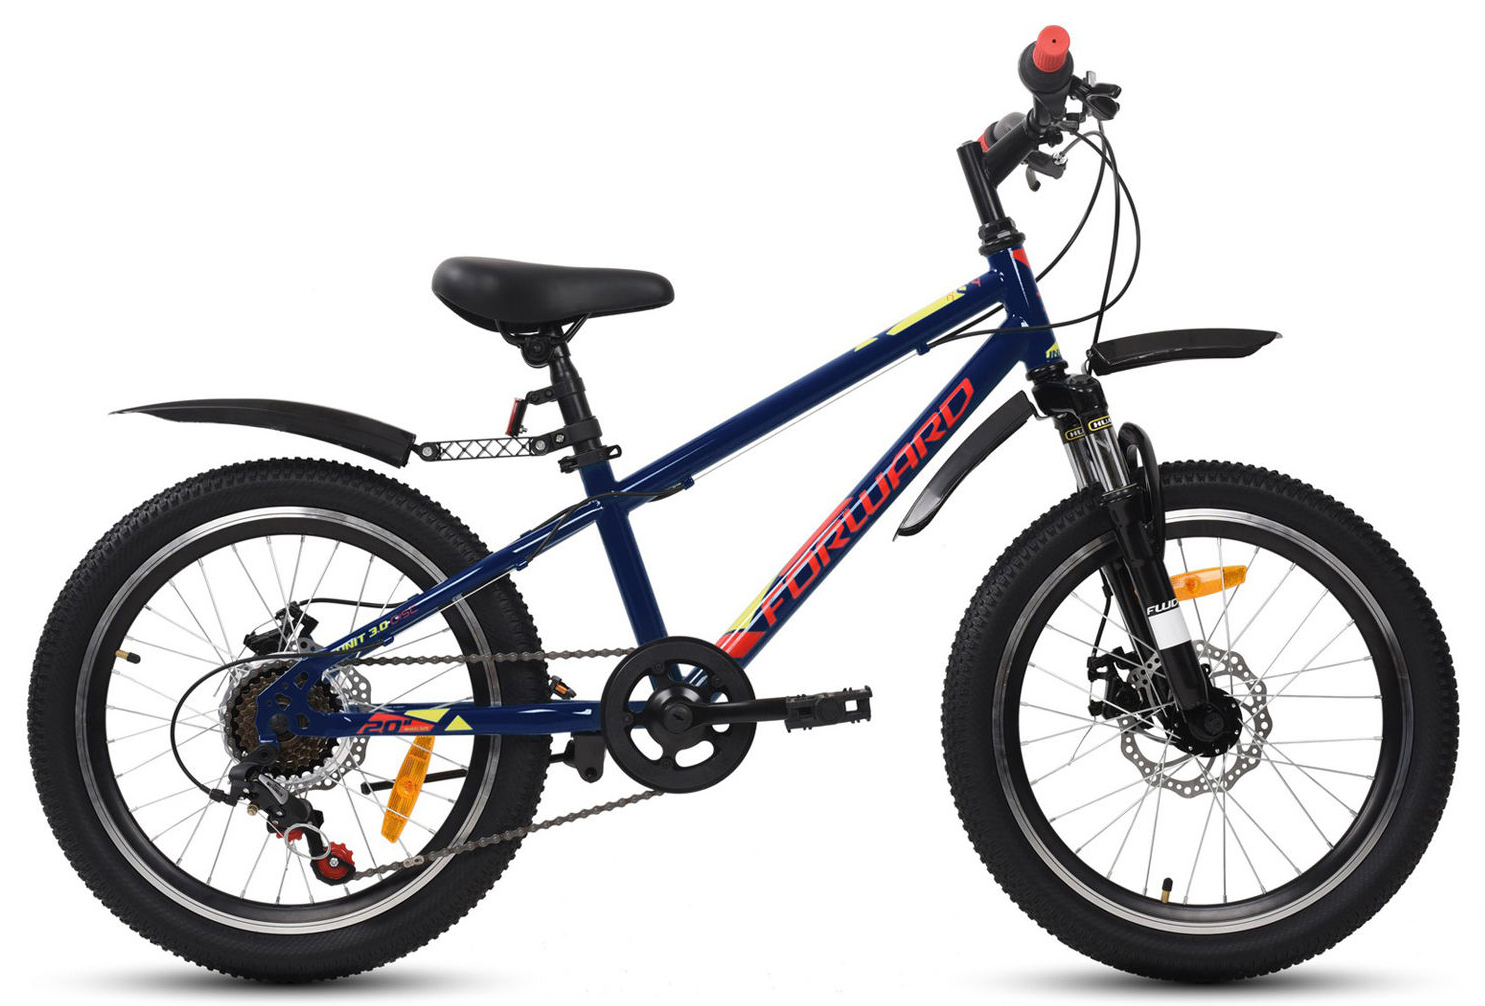  Отзывы о Детском велосипеде Forward Unit 20 3.0 Disc 2020